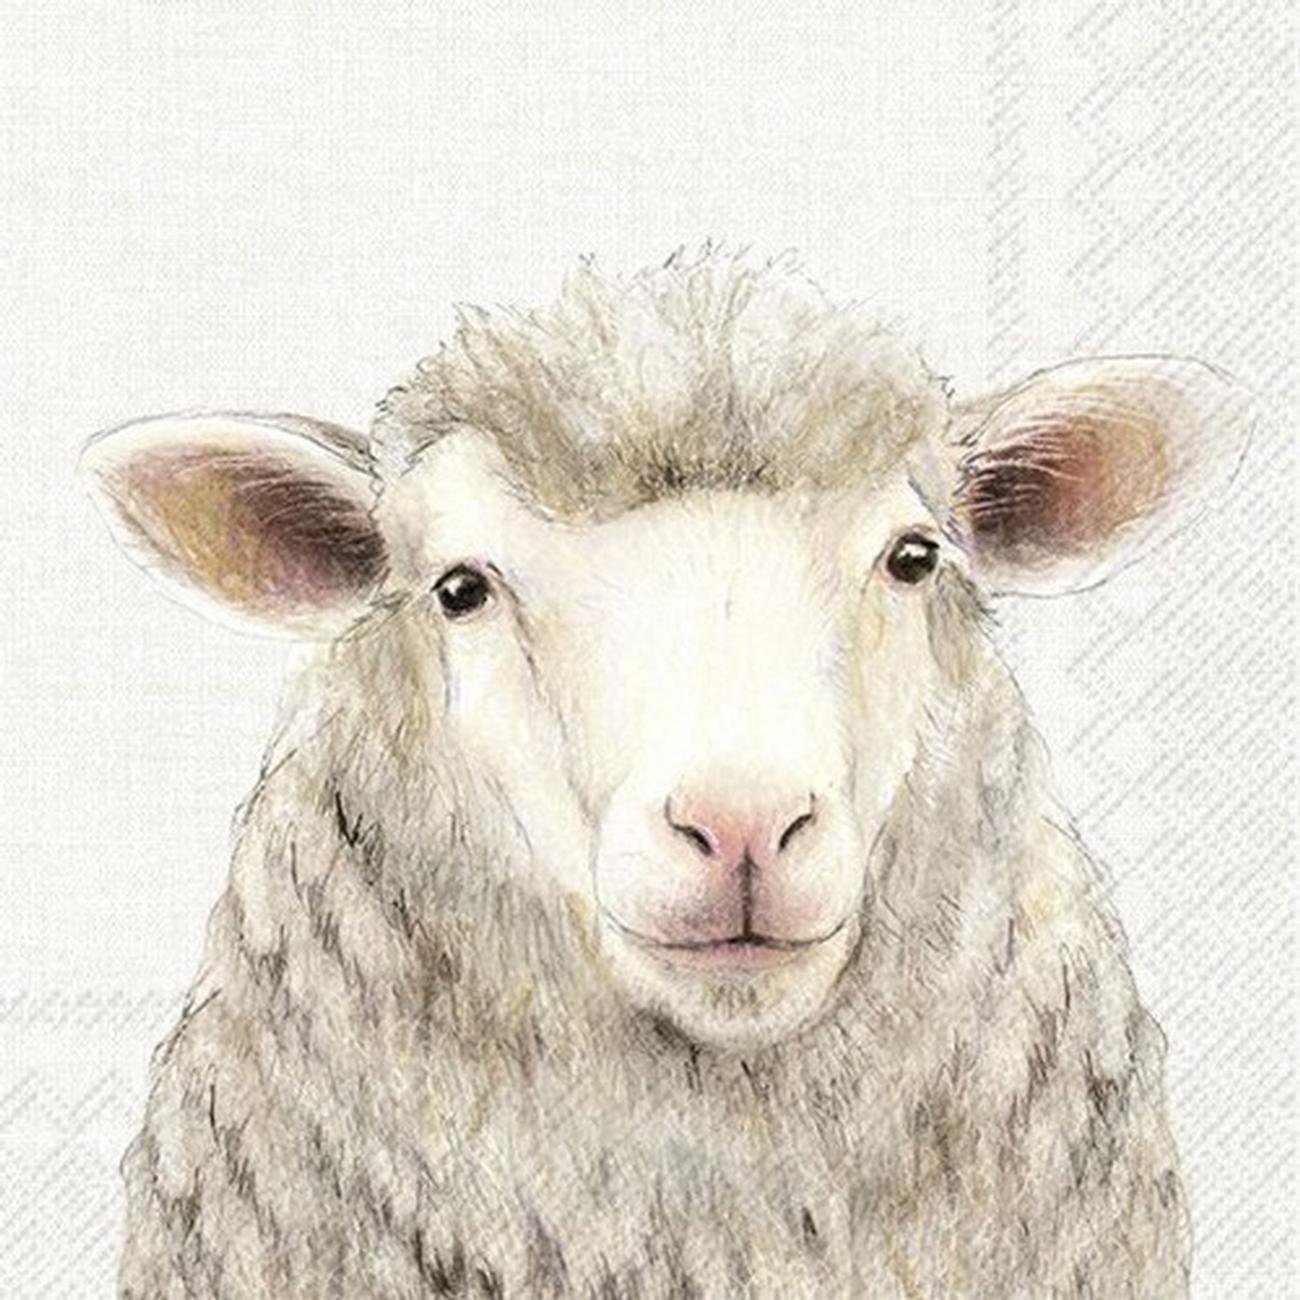 ihr-farm-sheep-cream-lunch-napkins - IHR Lunch Napkins Farm Sheep Cream